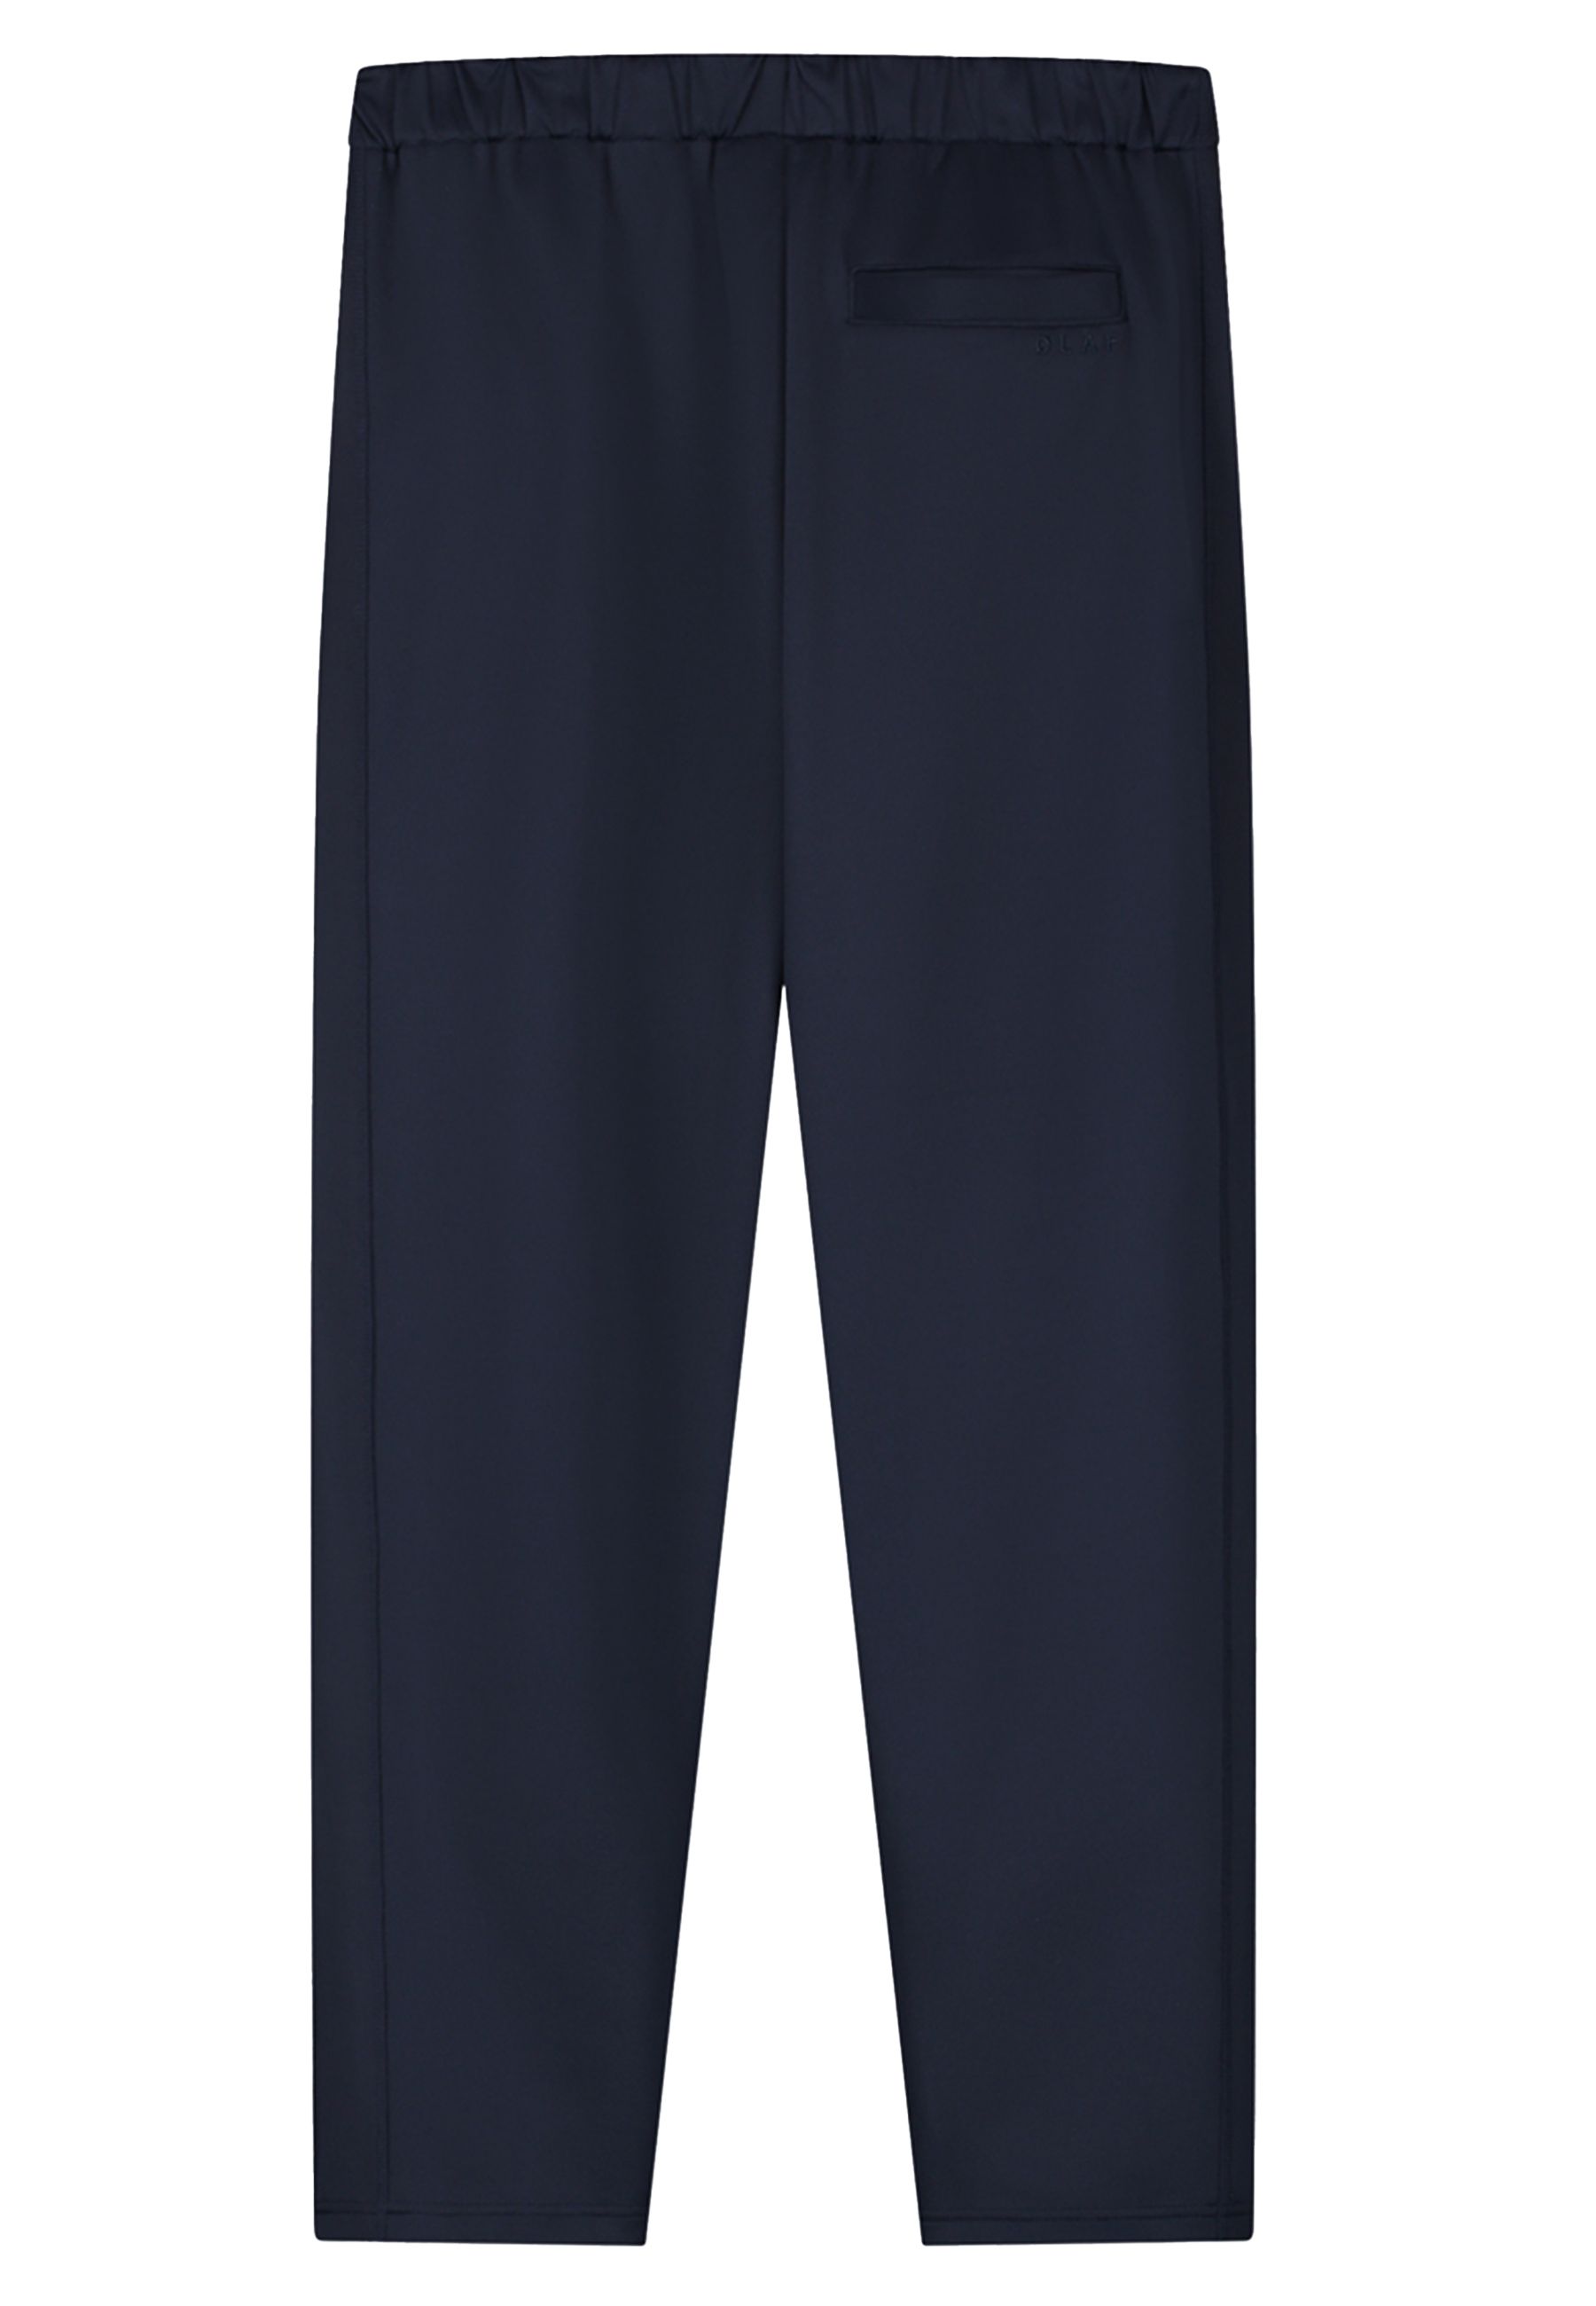 Pique Pantalons Donkerblauw M160409